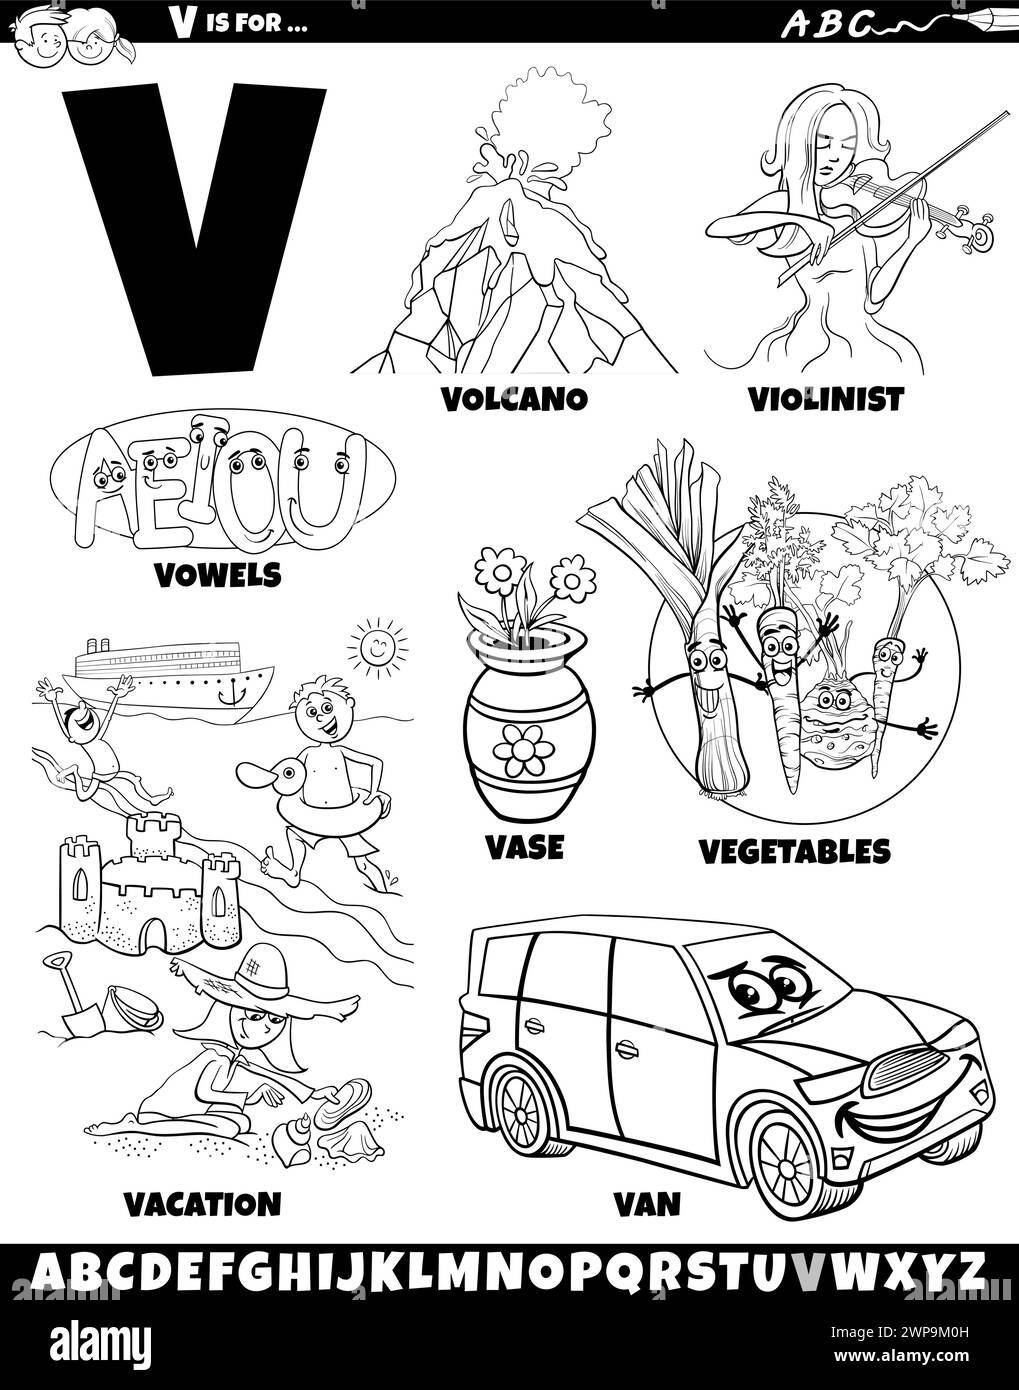 Illustration de dessin animé d'objets et de caractères définis pour la page de coloriage lettre V. Illustration de Vecteur